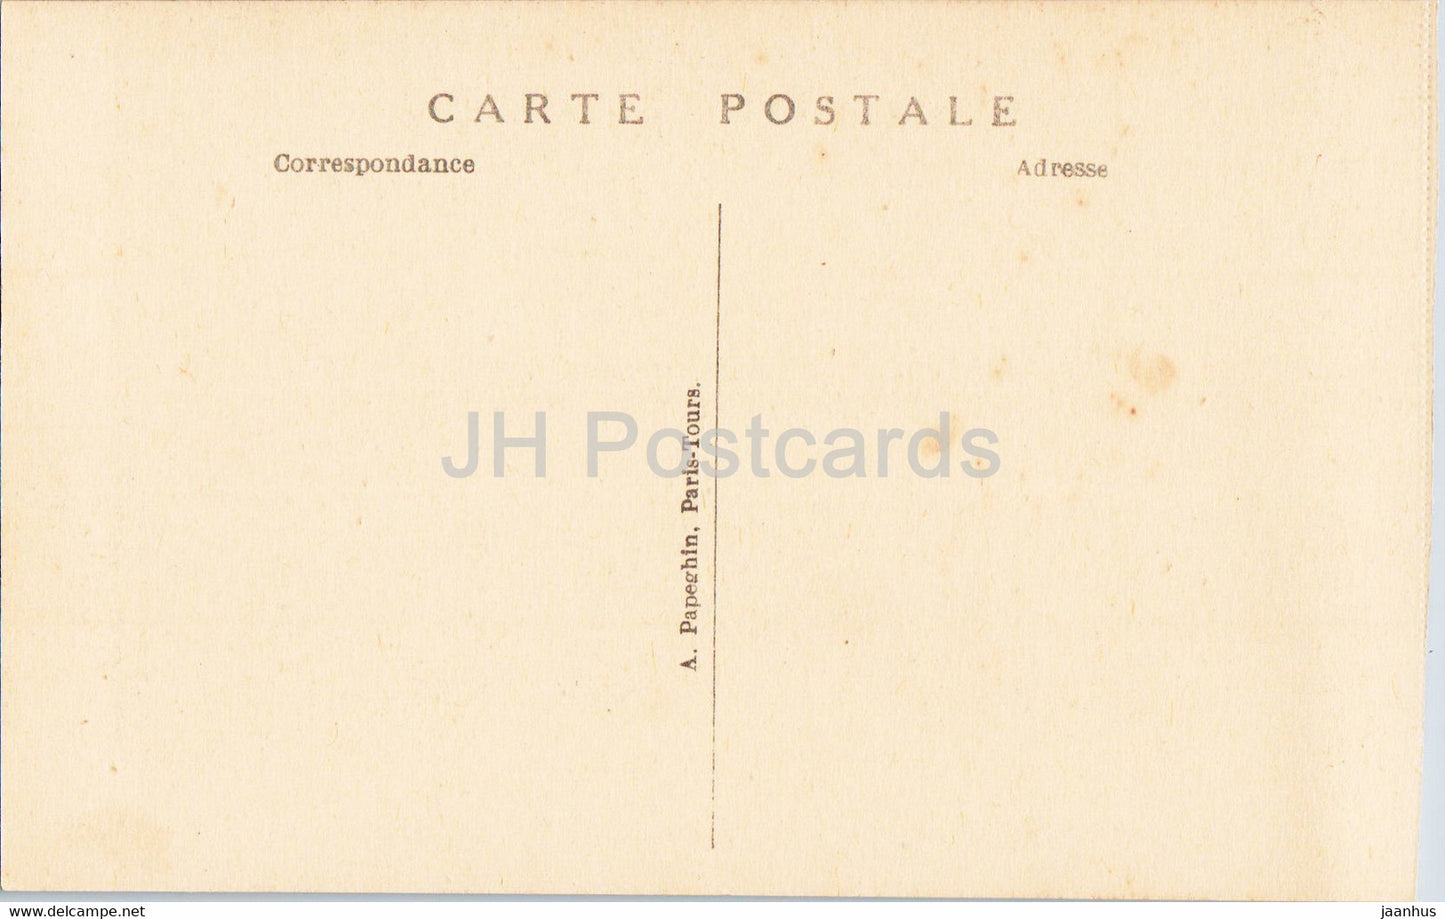 Versailles - Le Chateau - La Galerie des Batailles - 51 - Battle Gallery - alte Postkarte - Frankreich - unbenutzt